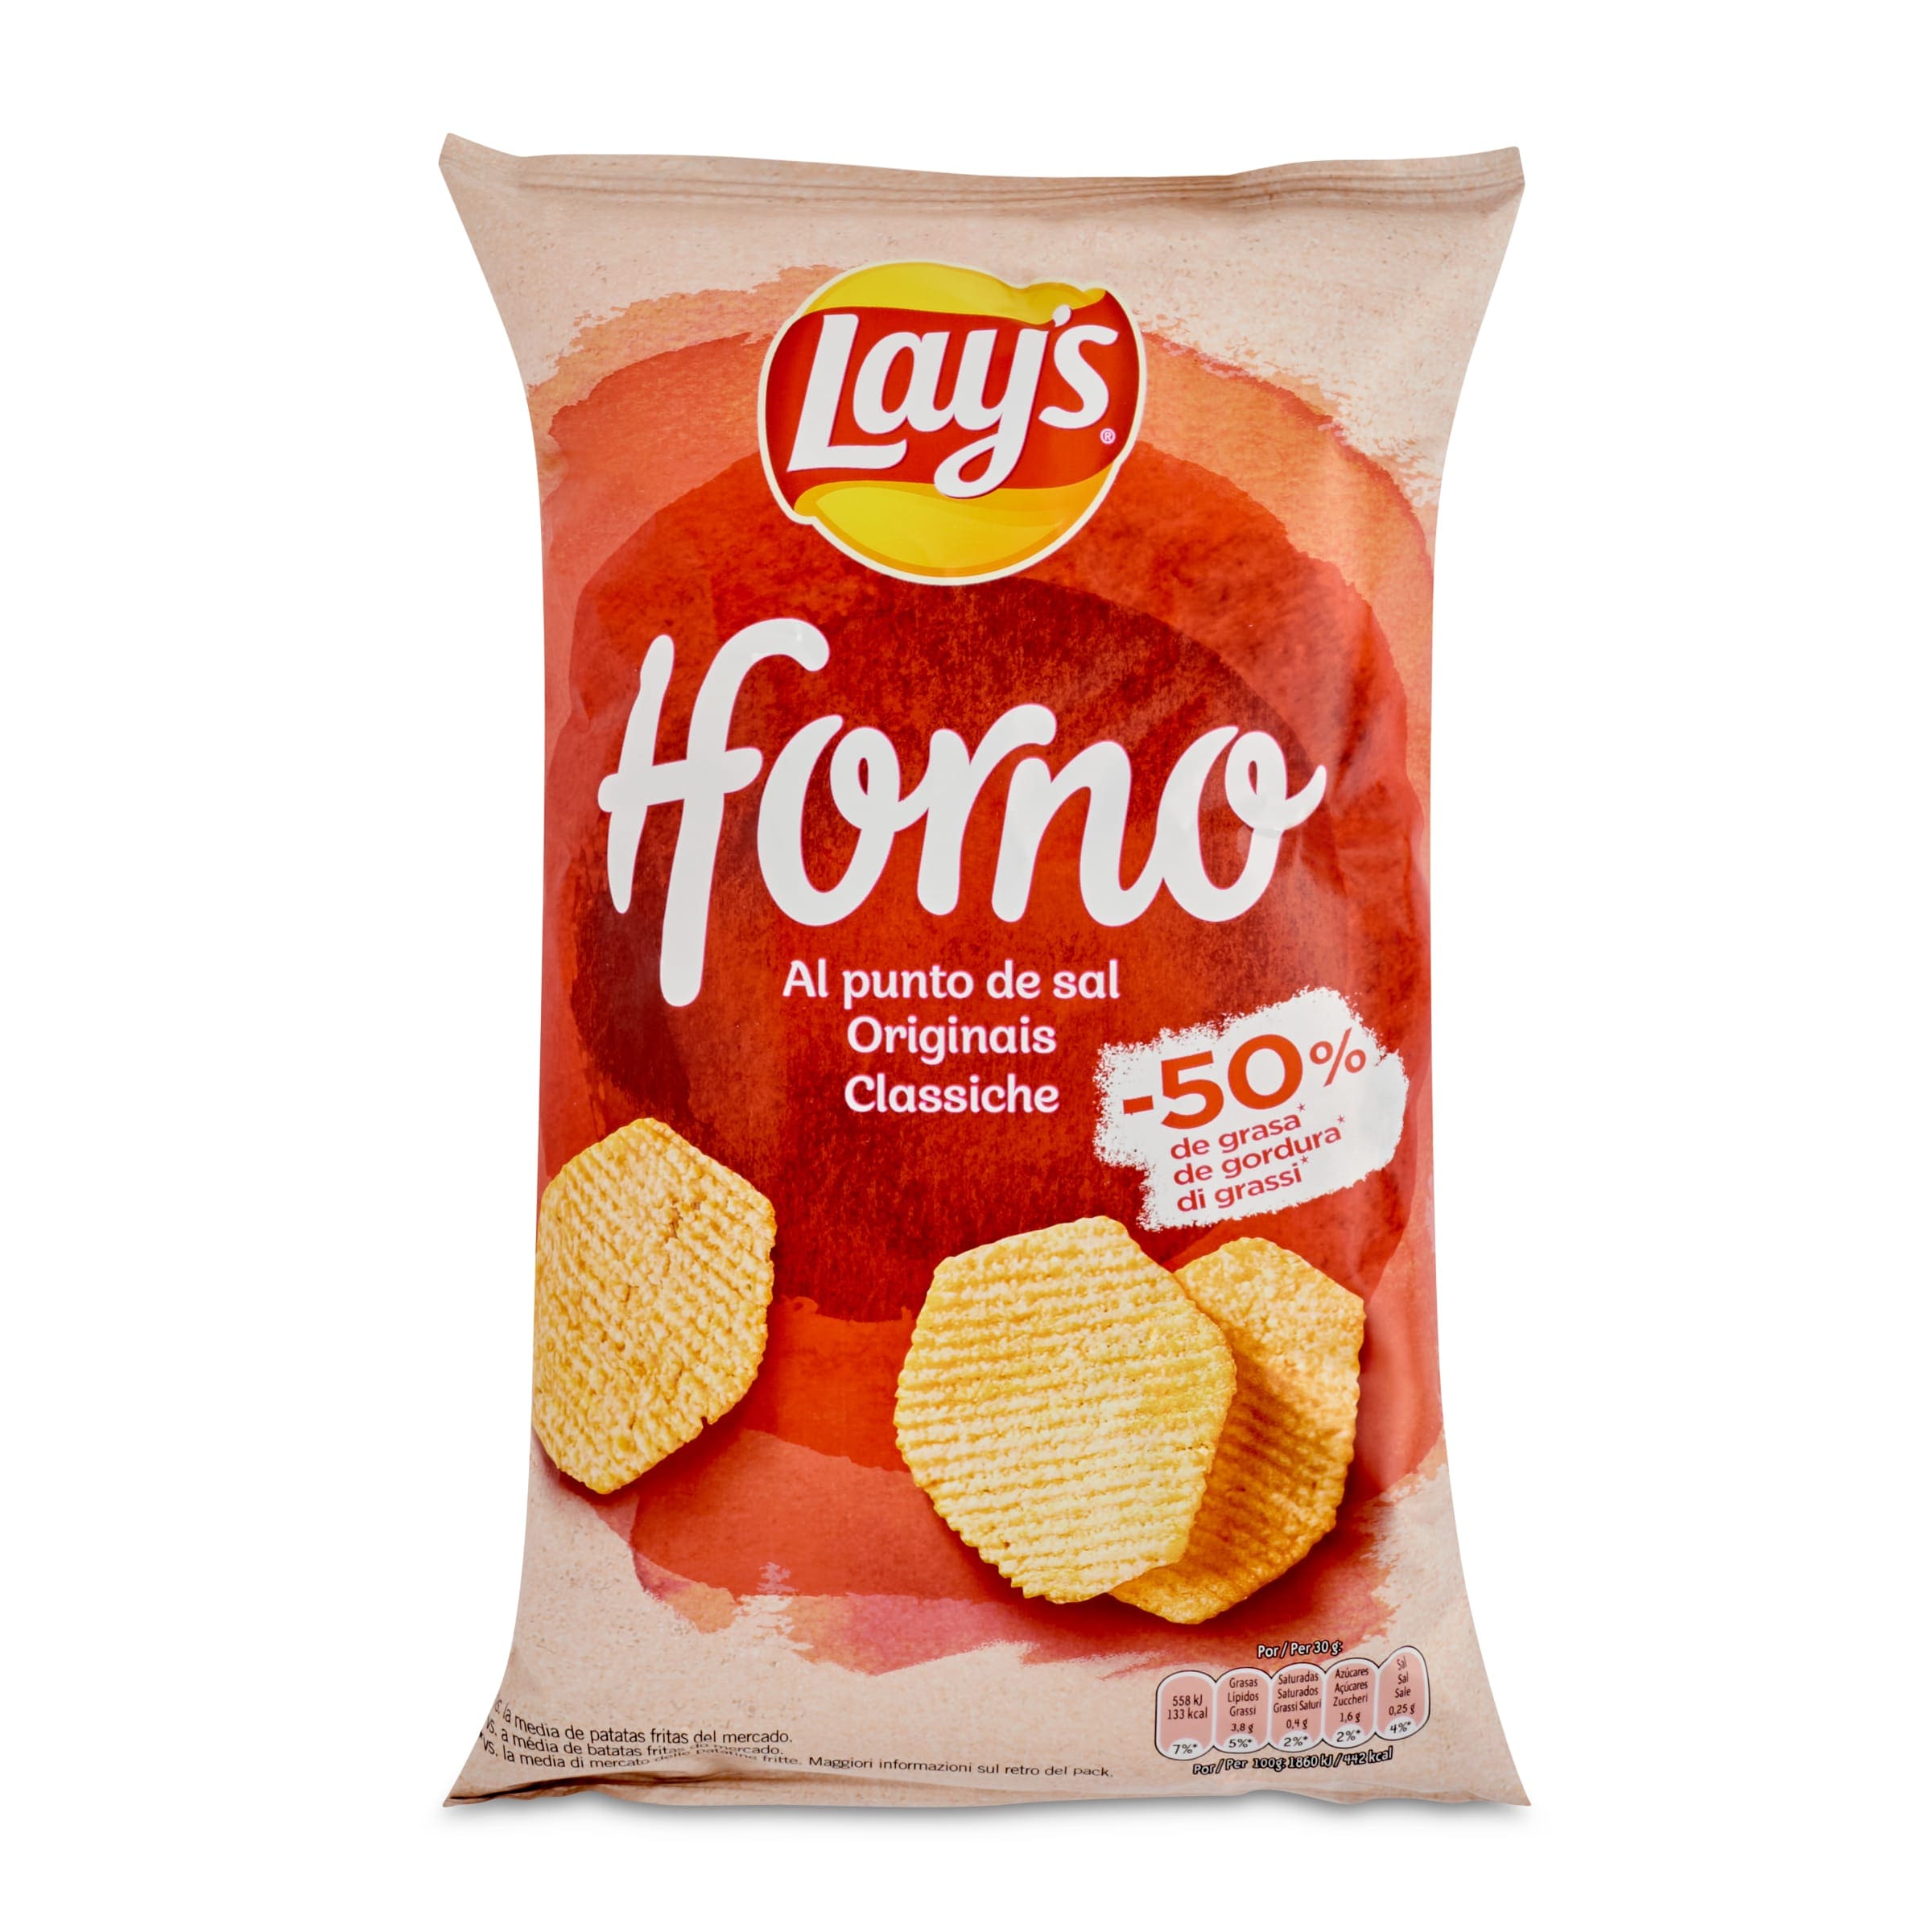 Patatas fritas sin sal bolsa 150gr - Productos Del Castillo Ronda